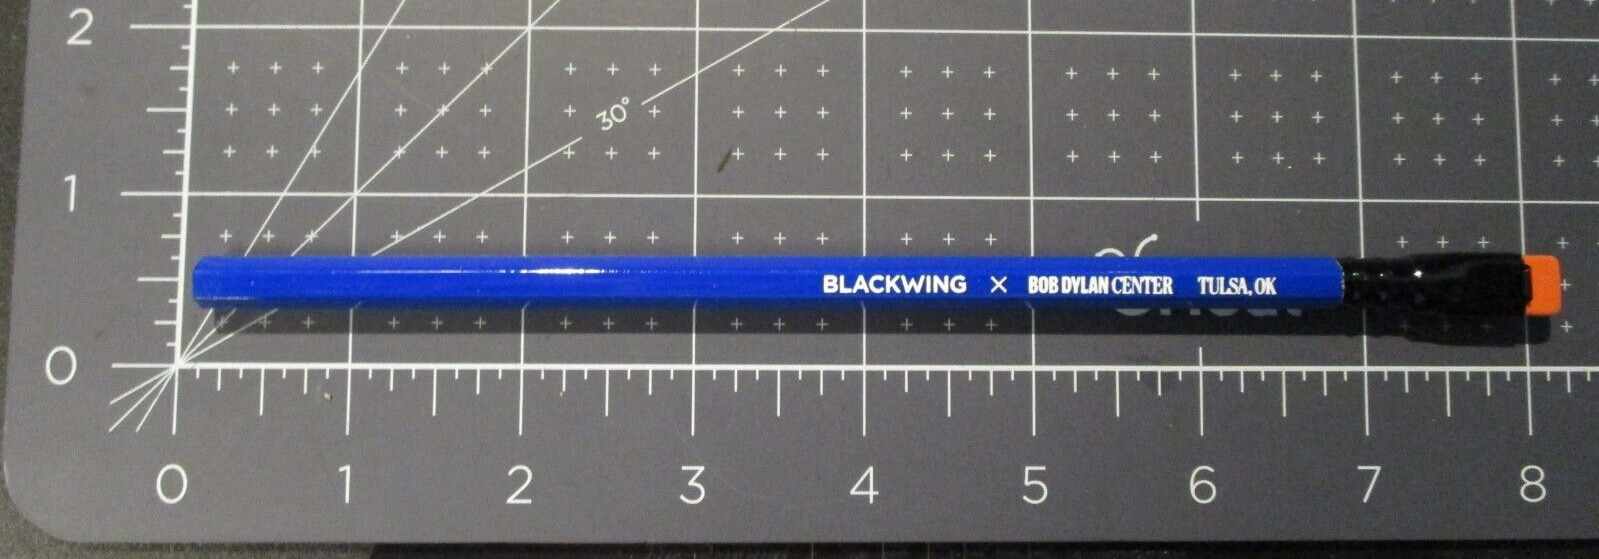 BLACKWING X Bob Dylan Center Tulsa palomino pencil 1 PENCIL no box